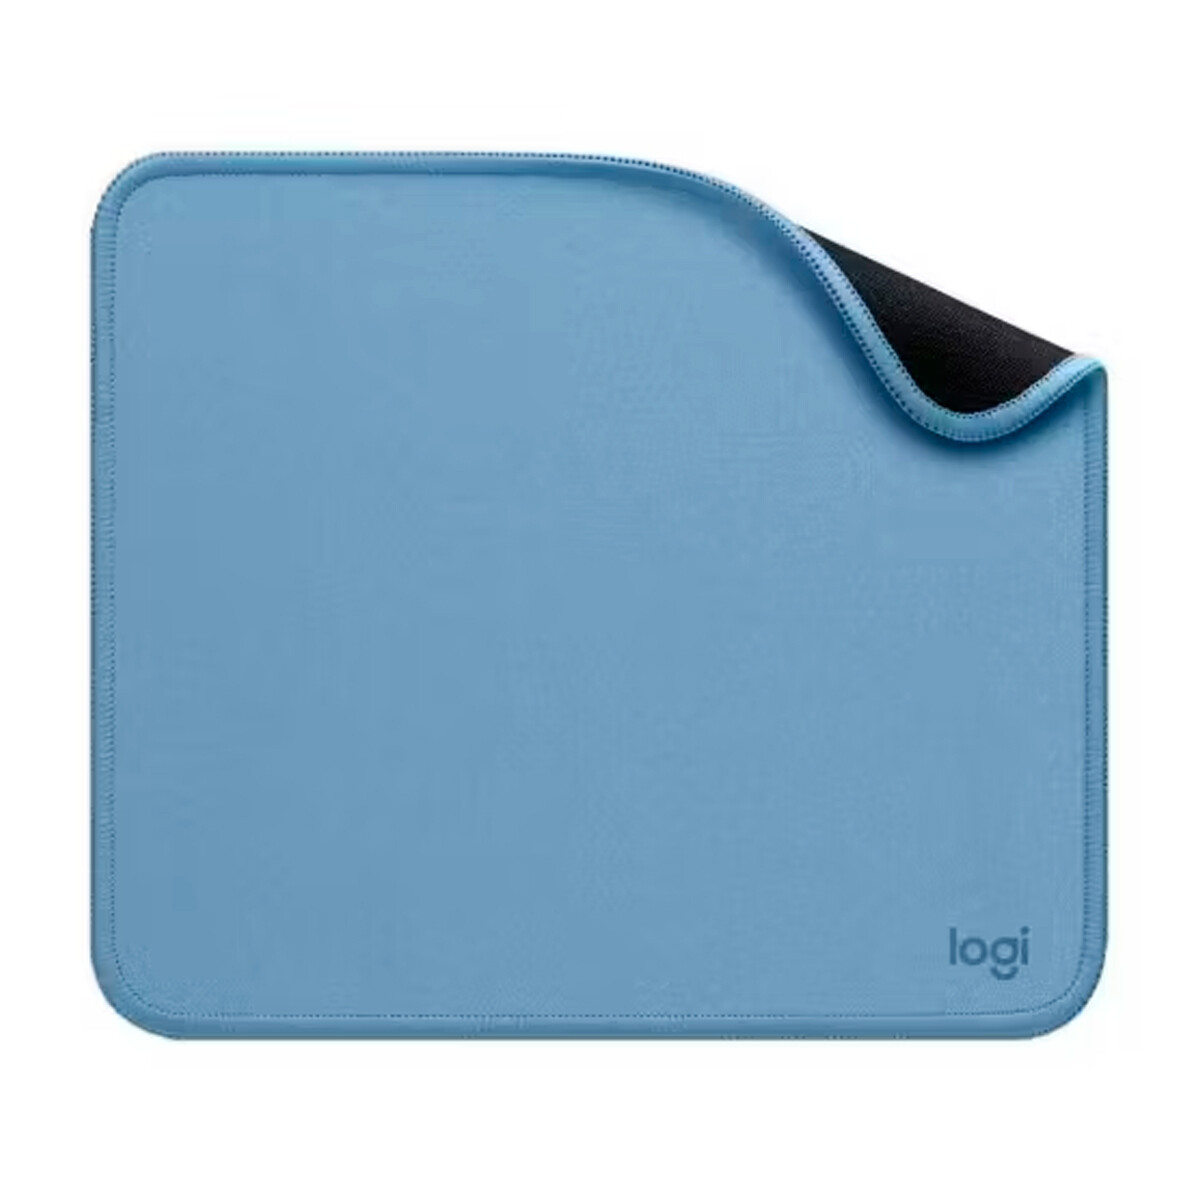 Mouse Pad Studio Series 23x20cm Blue Logitech 